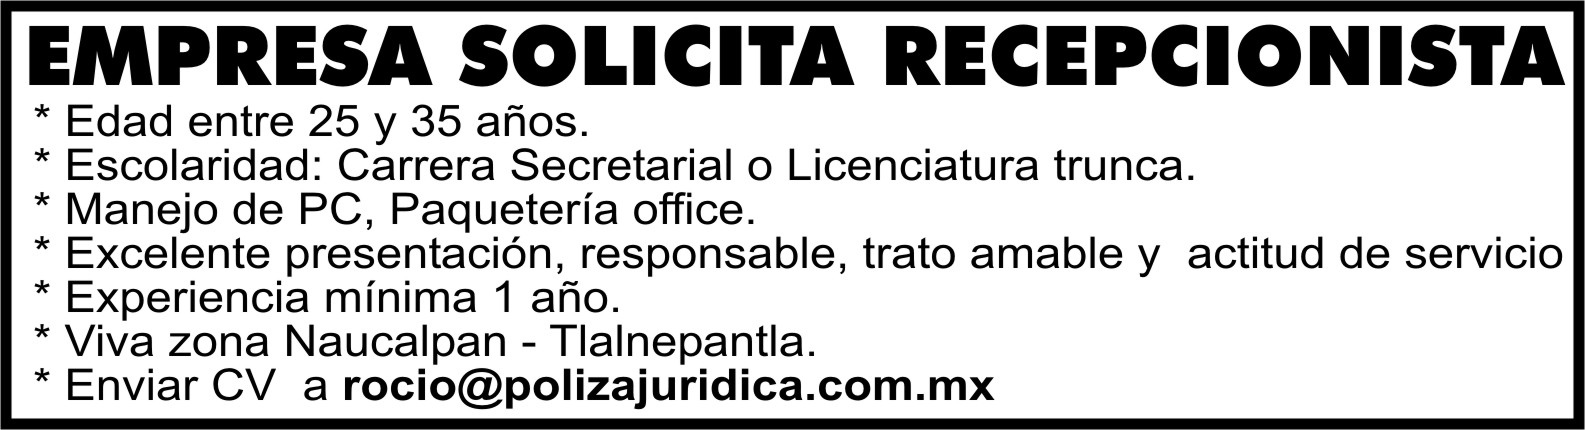 EMPRESA&NBSP;SOLICITA&NBSP;RECEPCIONISTA ROCIO@POLIZAJURIDICA.COM.MX
 